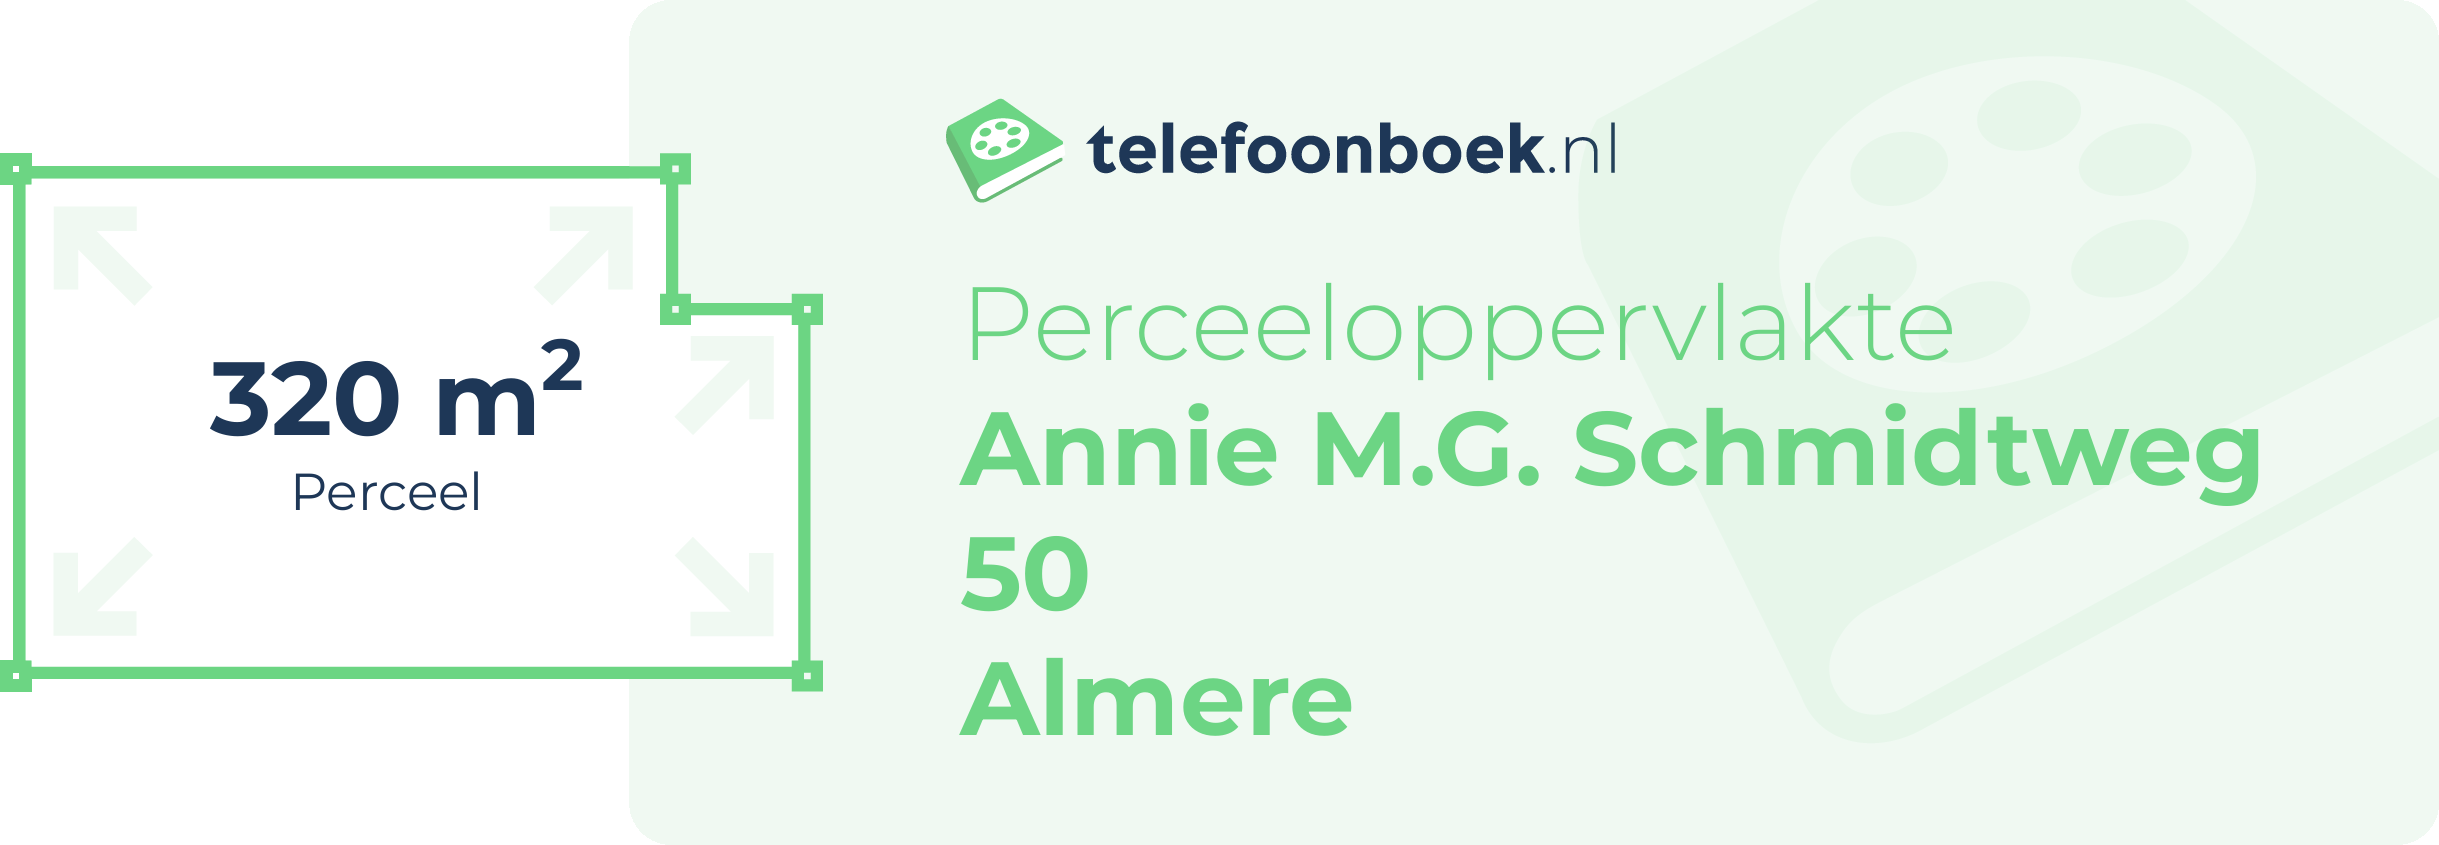 Perceeloppervlakte Annie M.G. Schmidtweg 50 Almere